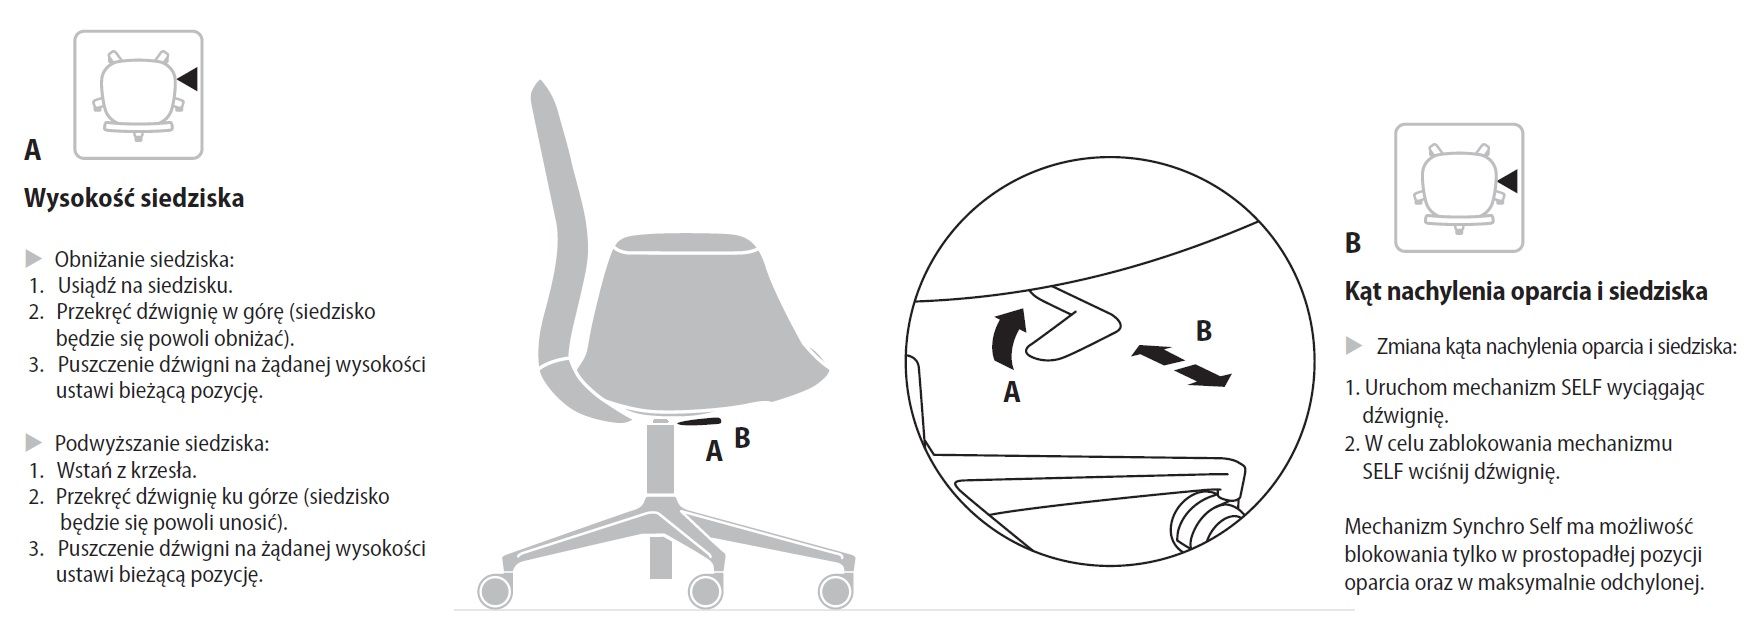 Krzesło obrotowe biurowe LightUP 230 SL to innowacyjne i ergonomiczne rozwiązanie dla osób spędzających wiele czasu przed biurkiem. Krzesło zostało zaprojektowane z myślą o wygodzie i zdrowiu użytkownika, dzięki czemu zapewnia optymalne wsparcie dla ciała podczas długotrwałej pracy siedzącej.